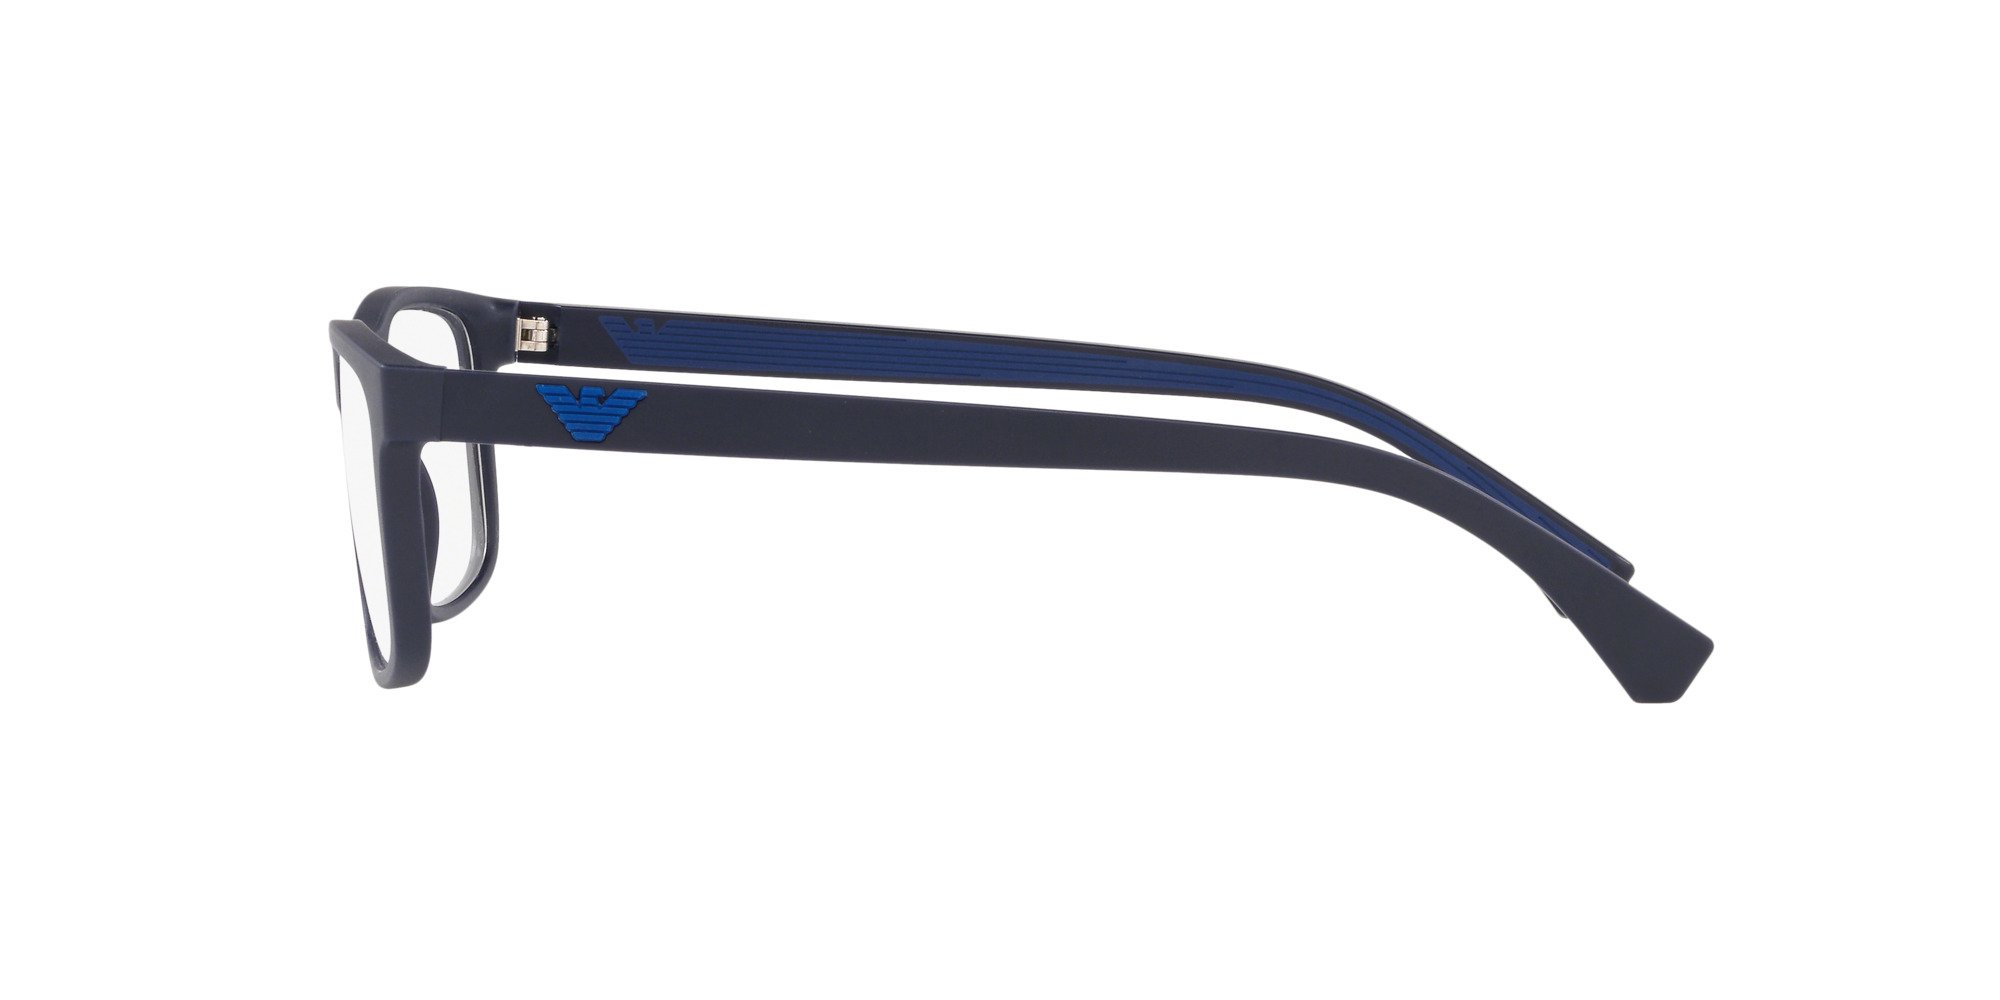 Das Bild zeigt die Korrektionsbrille EA3147 5754 von der Marke Emporio Armani in Blau.